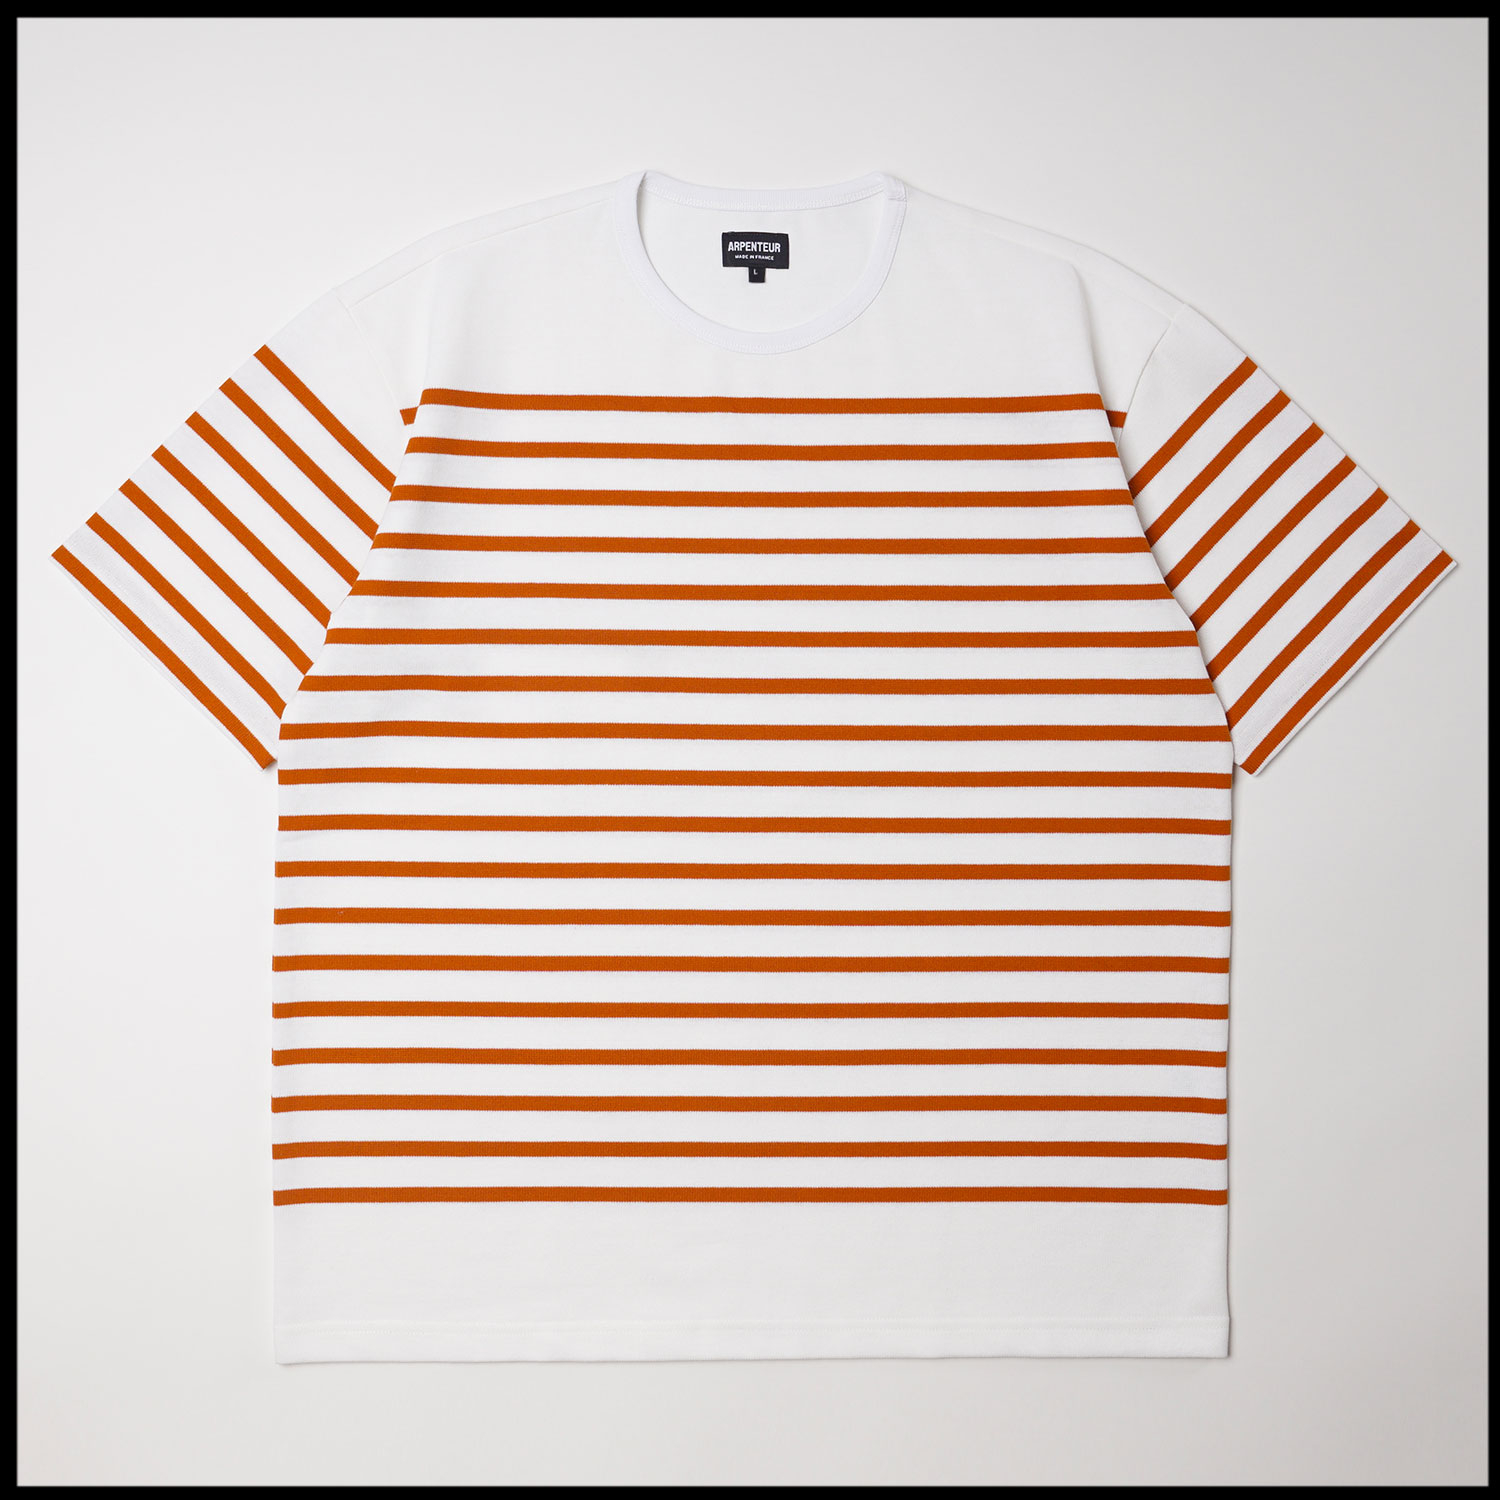 RACHEL t-shirt in White Orange color by Arpenteur